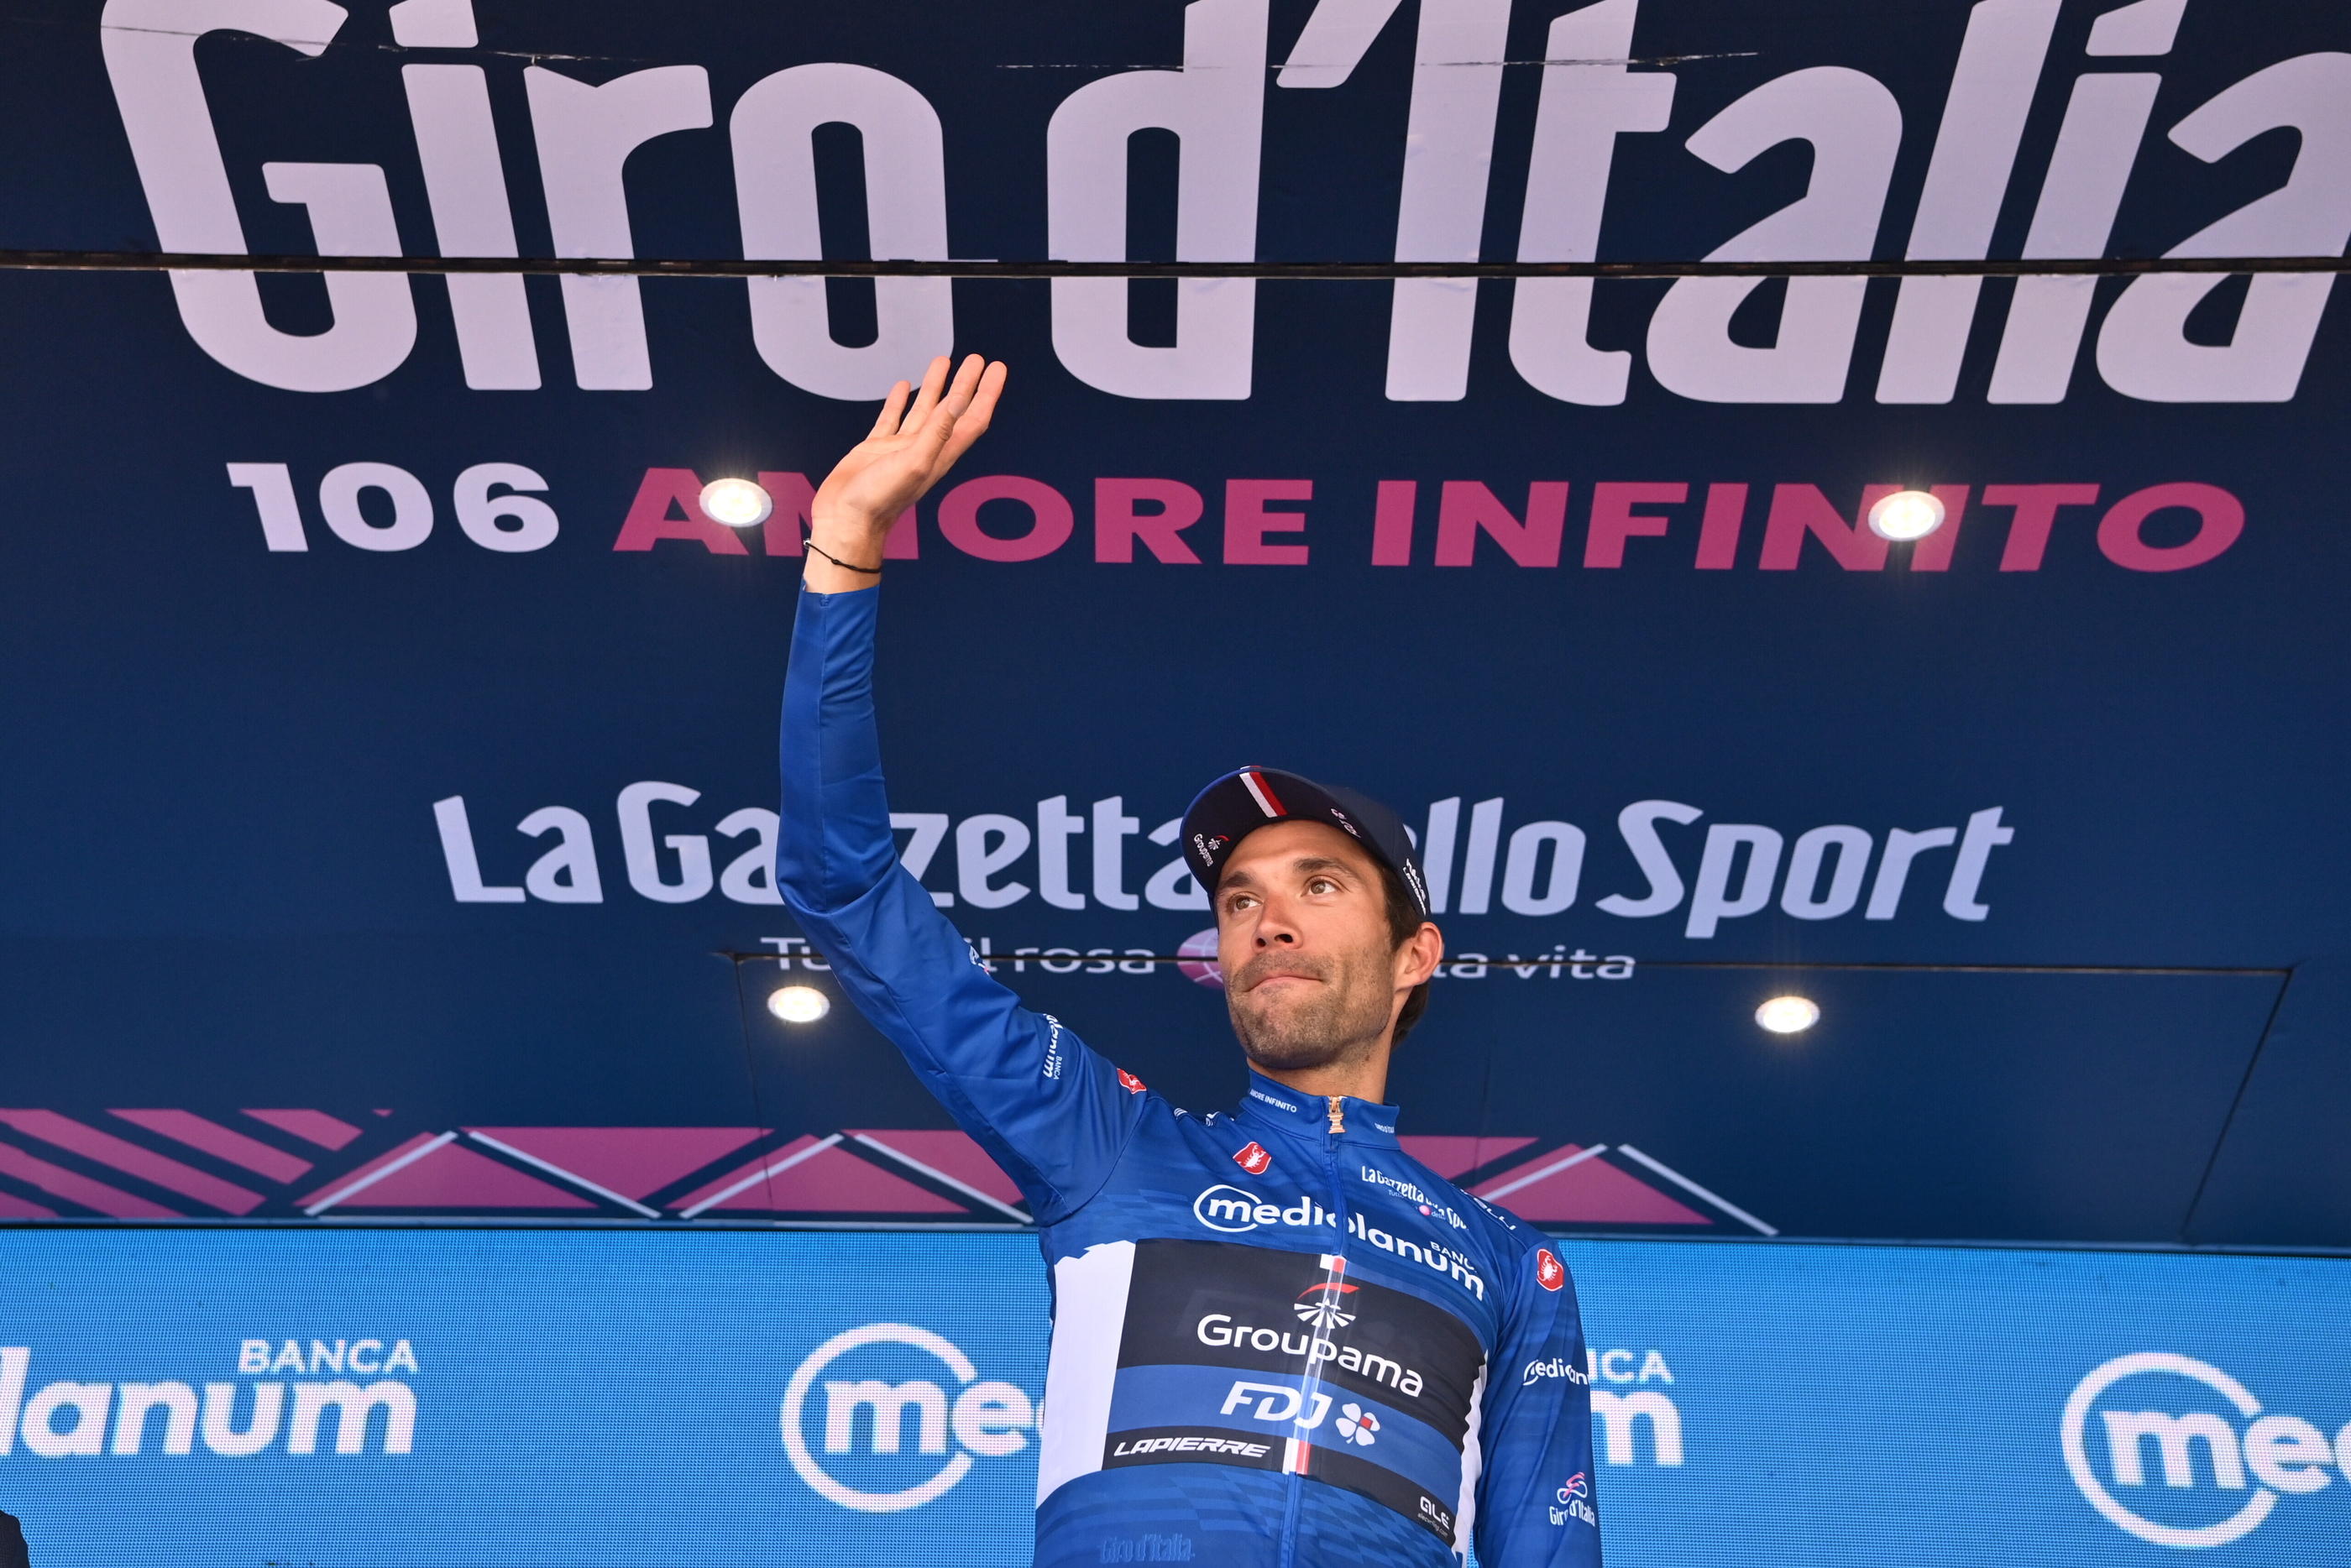 Pour ses adieux au Giro d'Italia l'an dernier, Thibaut Pinot a remporté le maillot bleu de meilleur grimpeur et terminé 5e. Icon sport/Masssimo Paolone